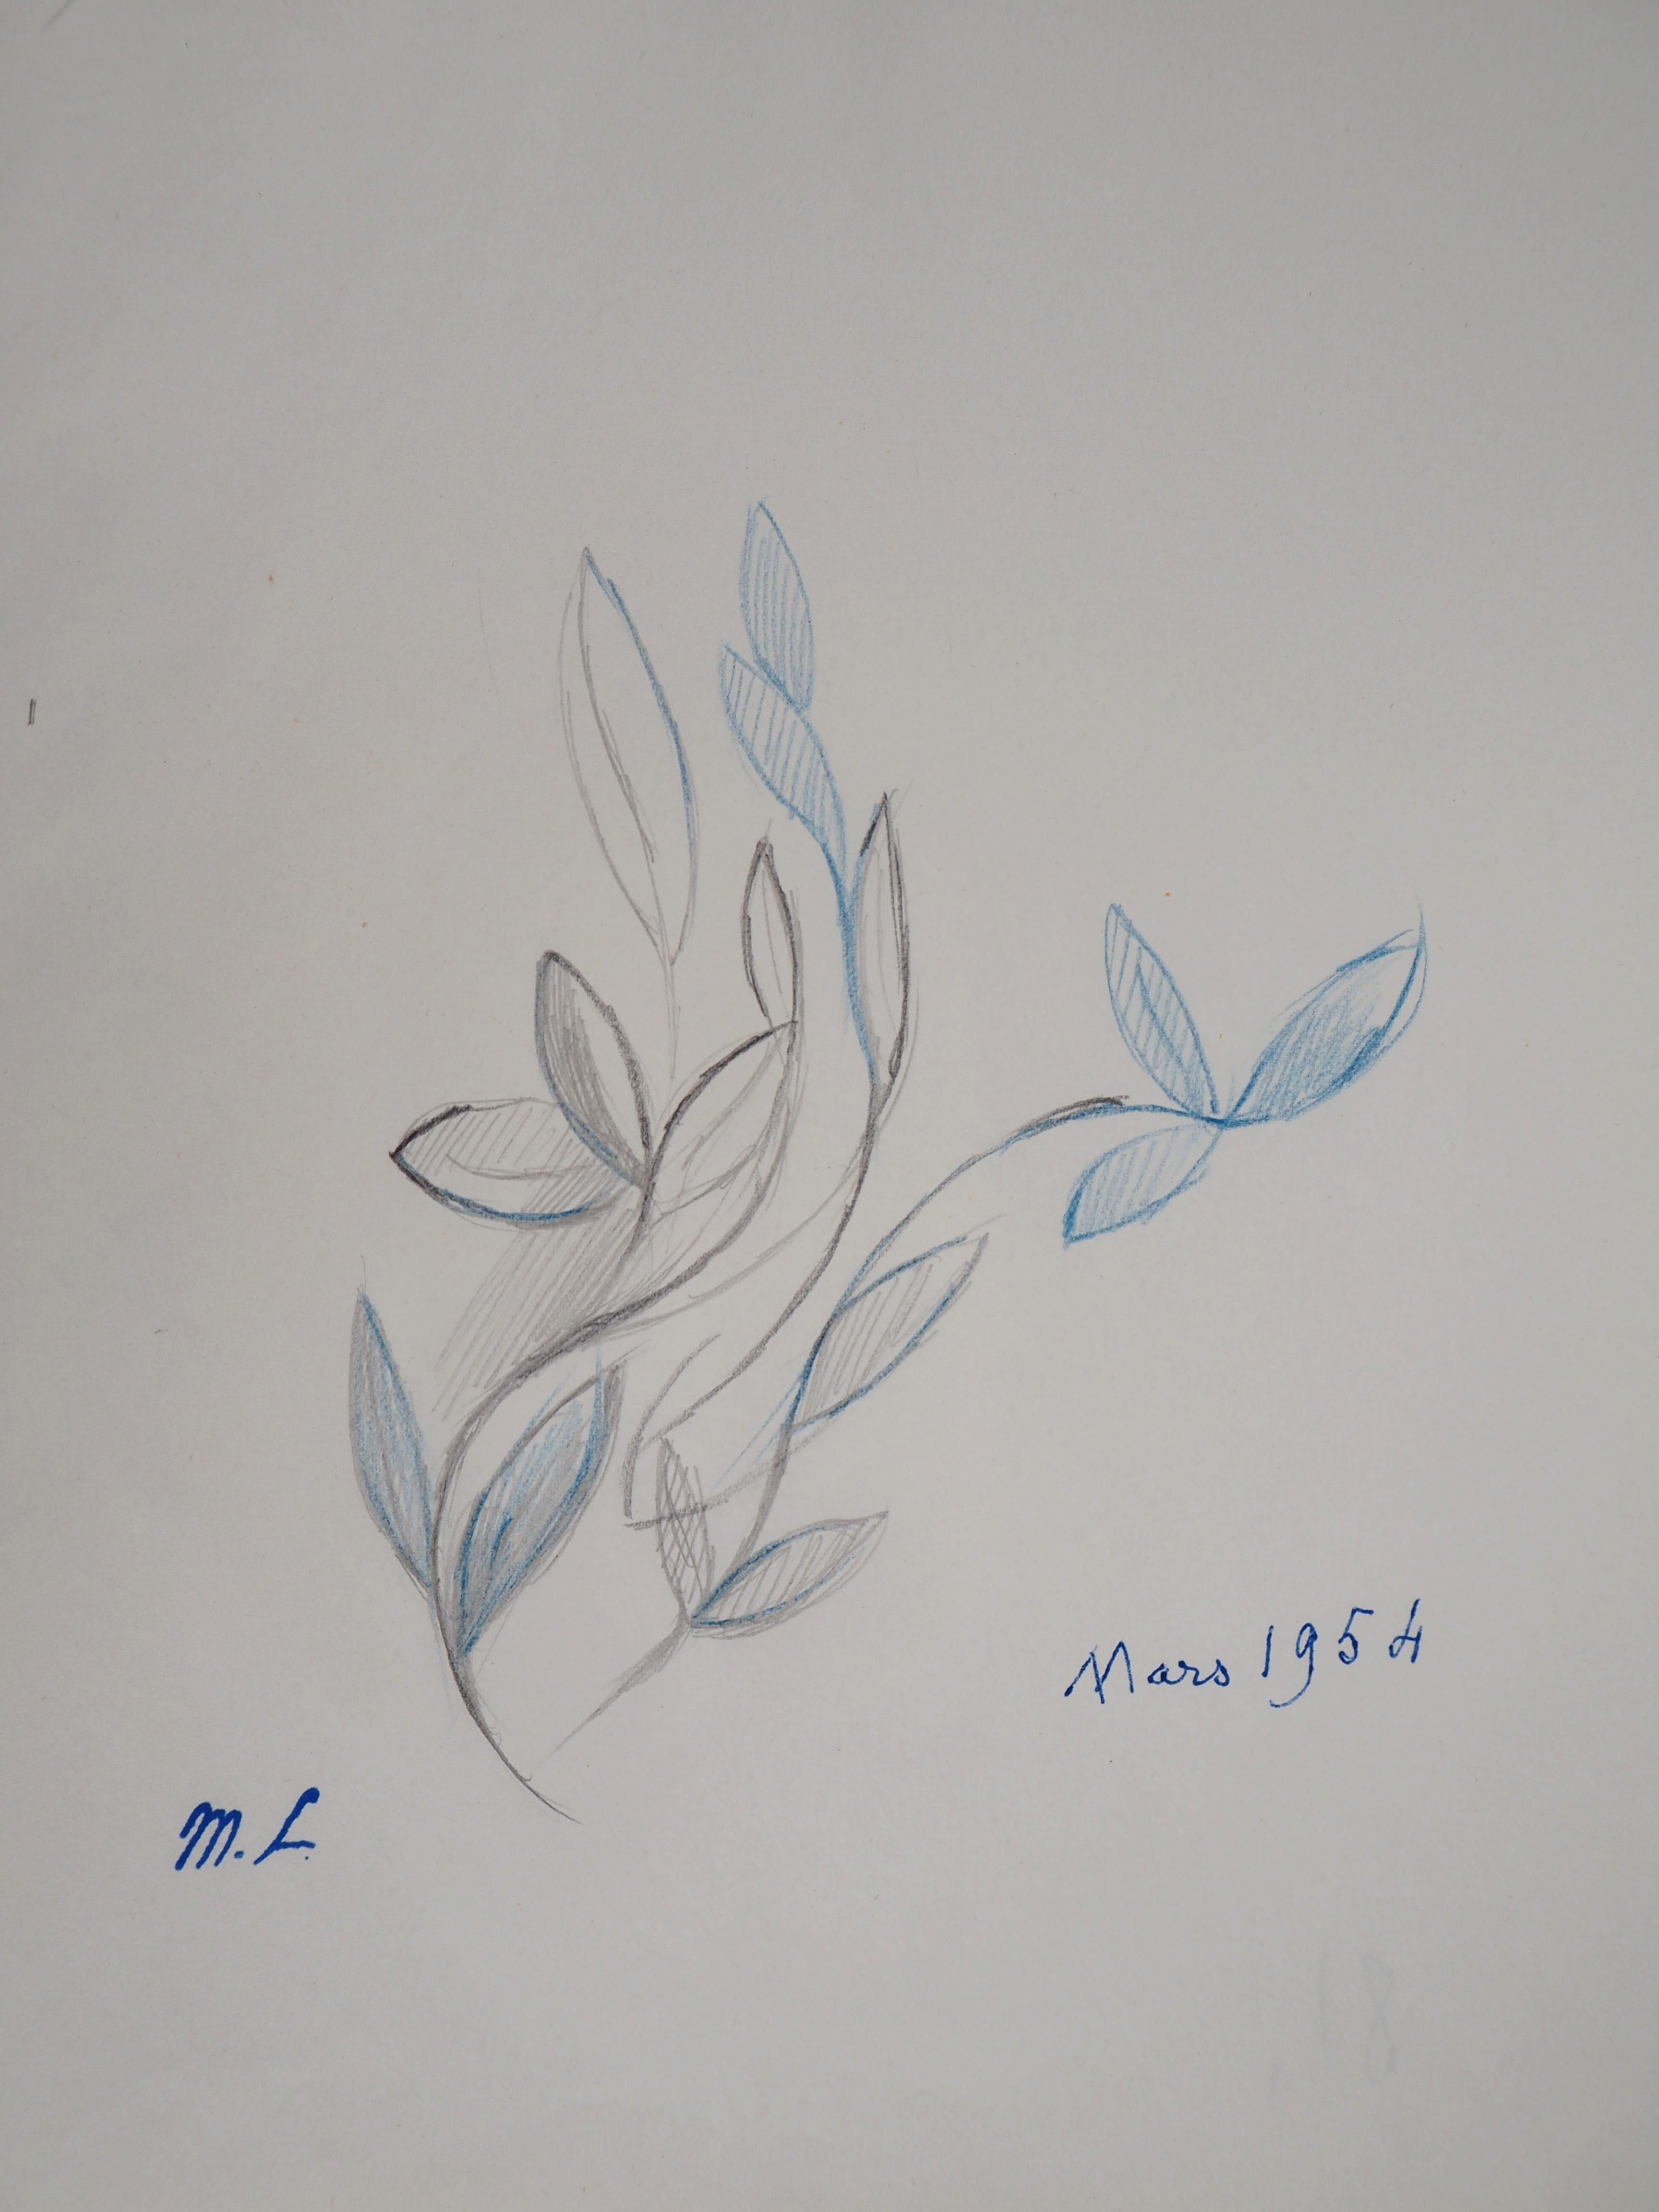 Marie LAURENCIN
Fleur de printemps : feuilles en bleu, 1953

Dessin original au crayon 
Cachet de l'artiste signé
Sur papier 24,5 x 19,5 cm (environ 9,6 x 7,6 pouces)

Très bon état, marques de la manipulation sur le papier